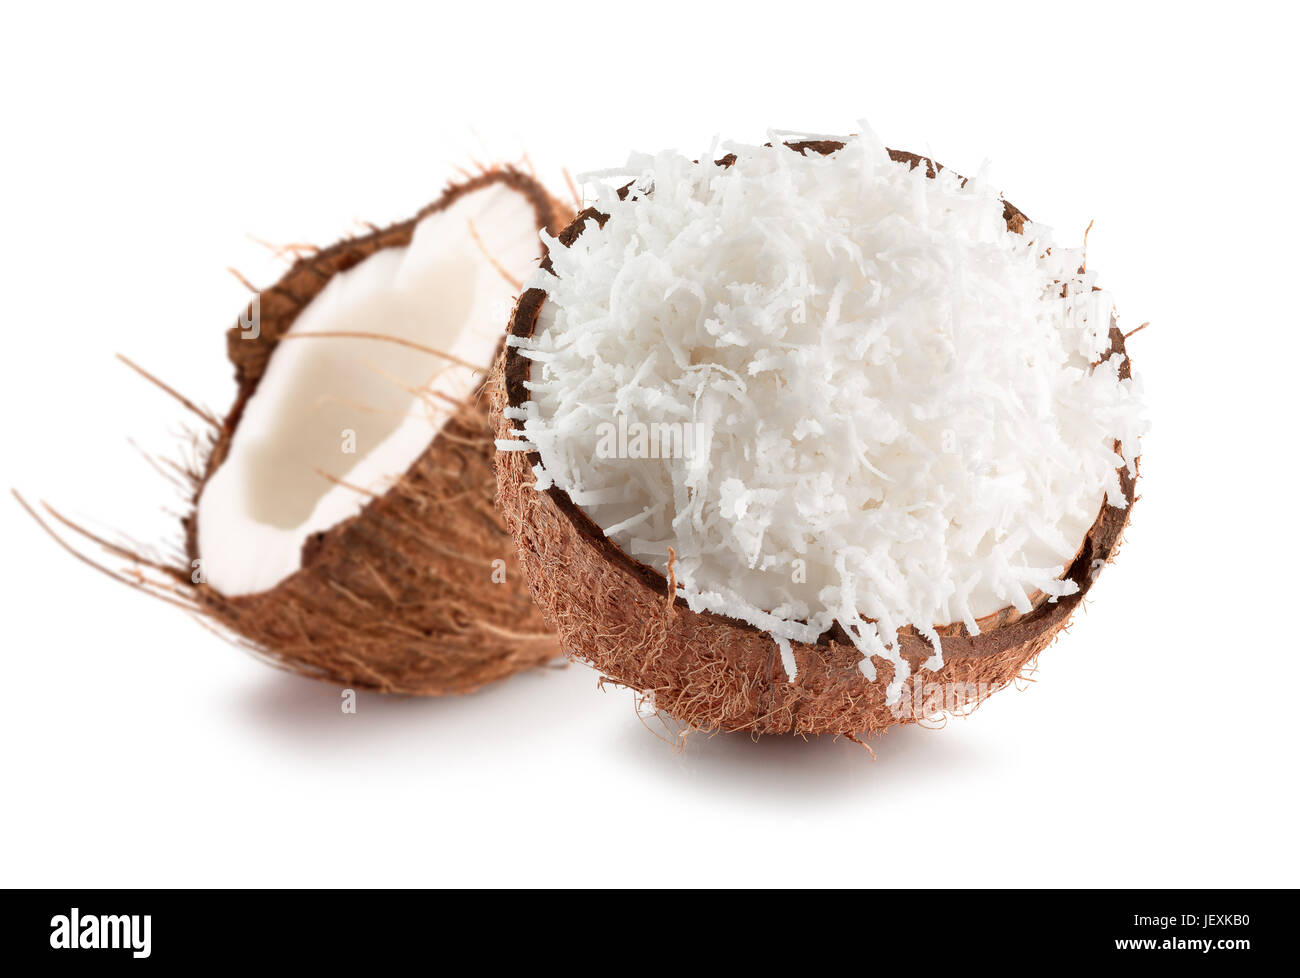 Due metà di noce di cocco con noci di cocco in scaglie isolate su uno sfondo bianco. Foto Stock